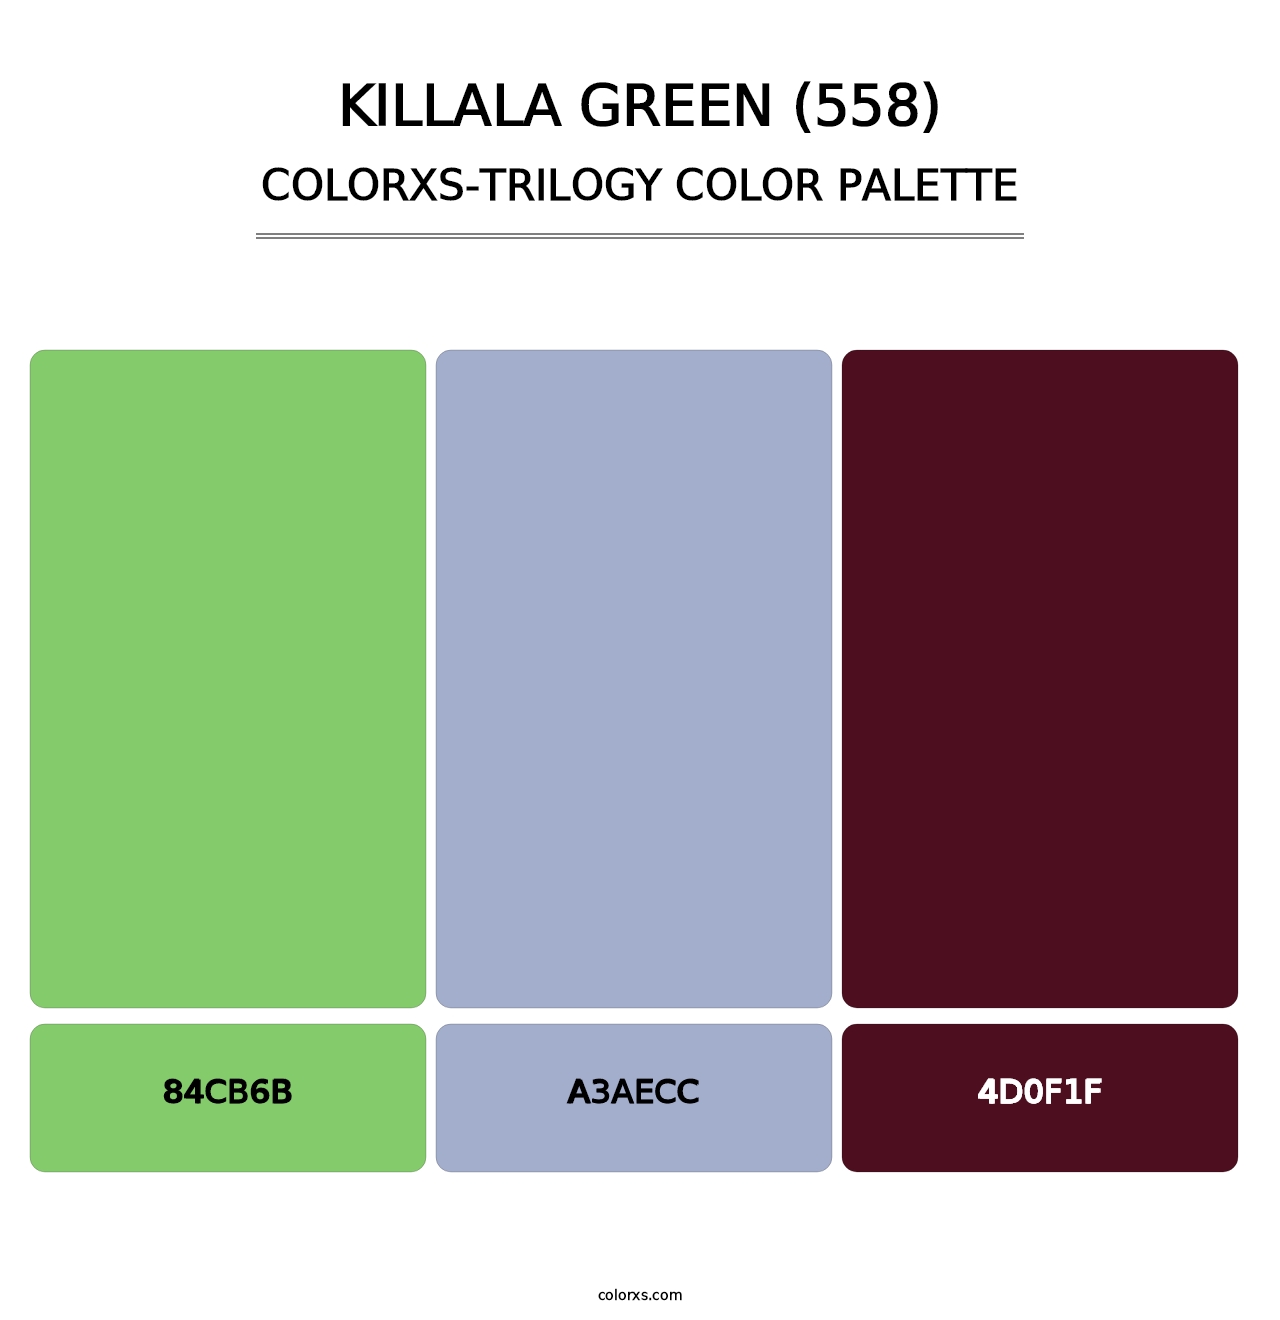 Killala Green (558) - Colorxs Trilogy Palette